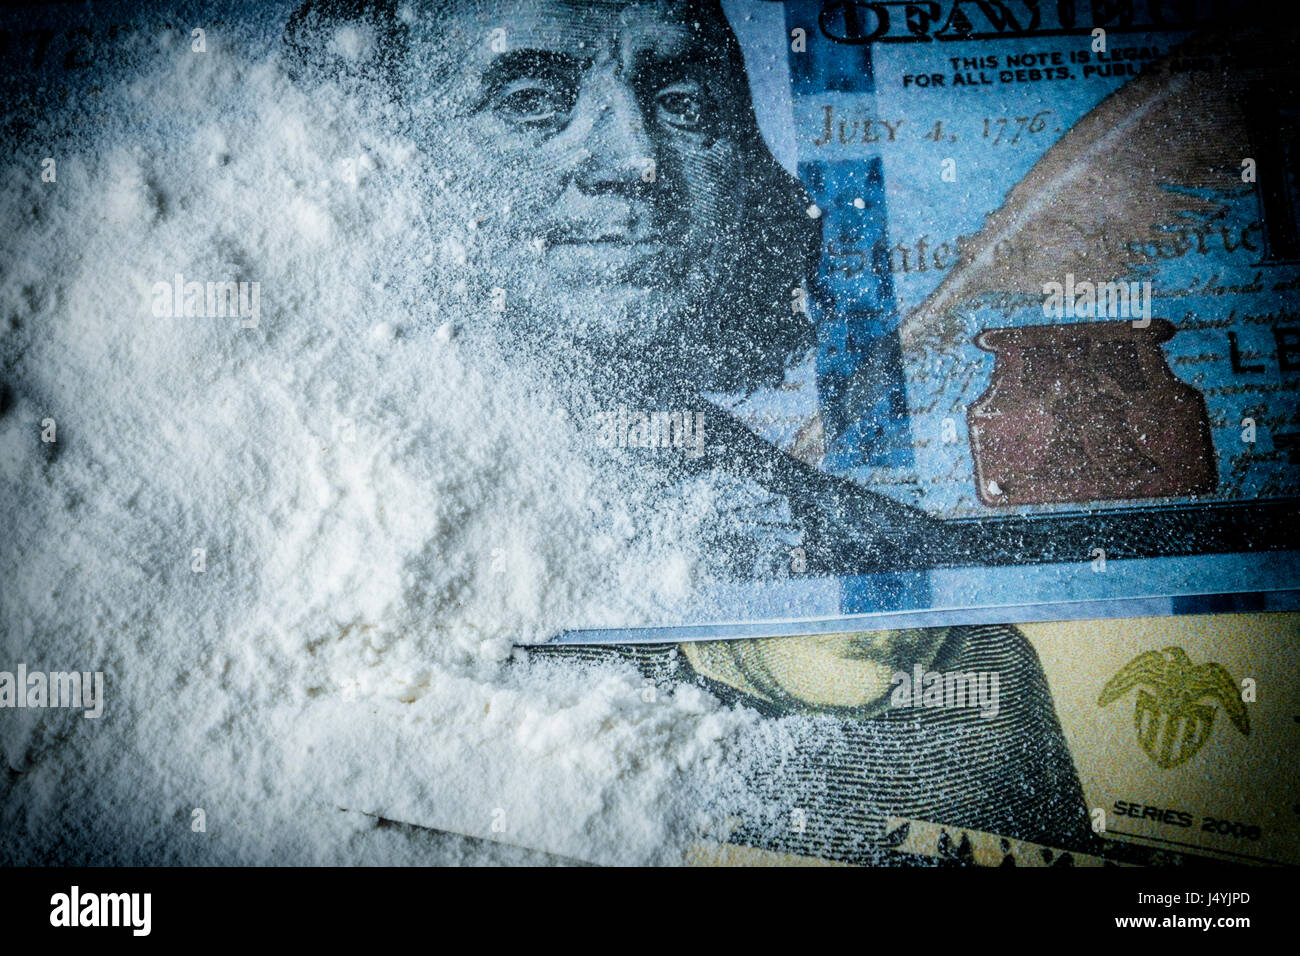 La cocaïne en poudre le long du pieu avec plusieurs billets dollar Banque D'Images